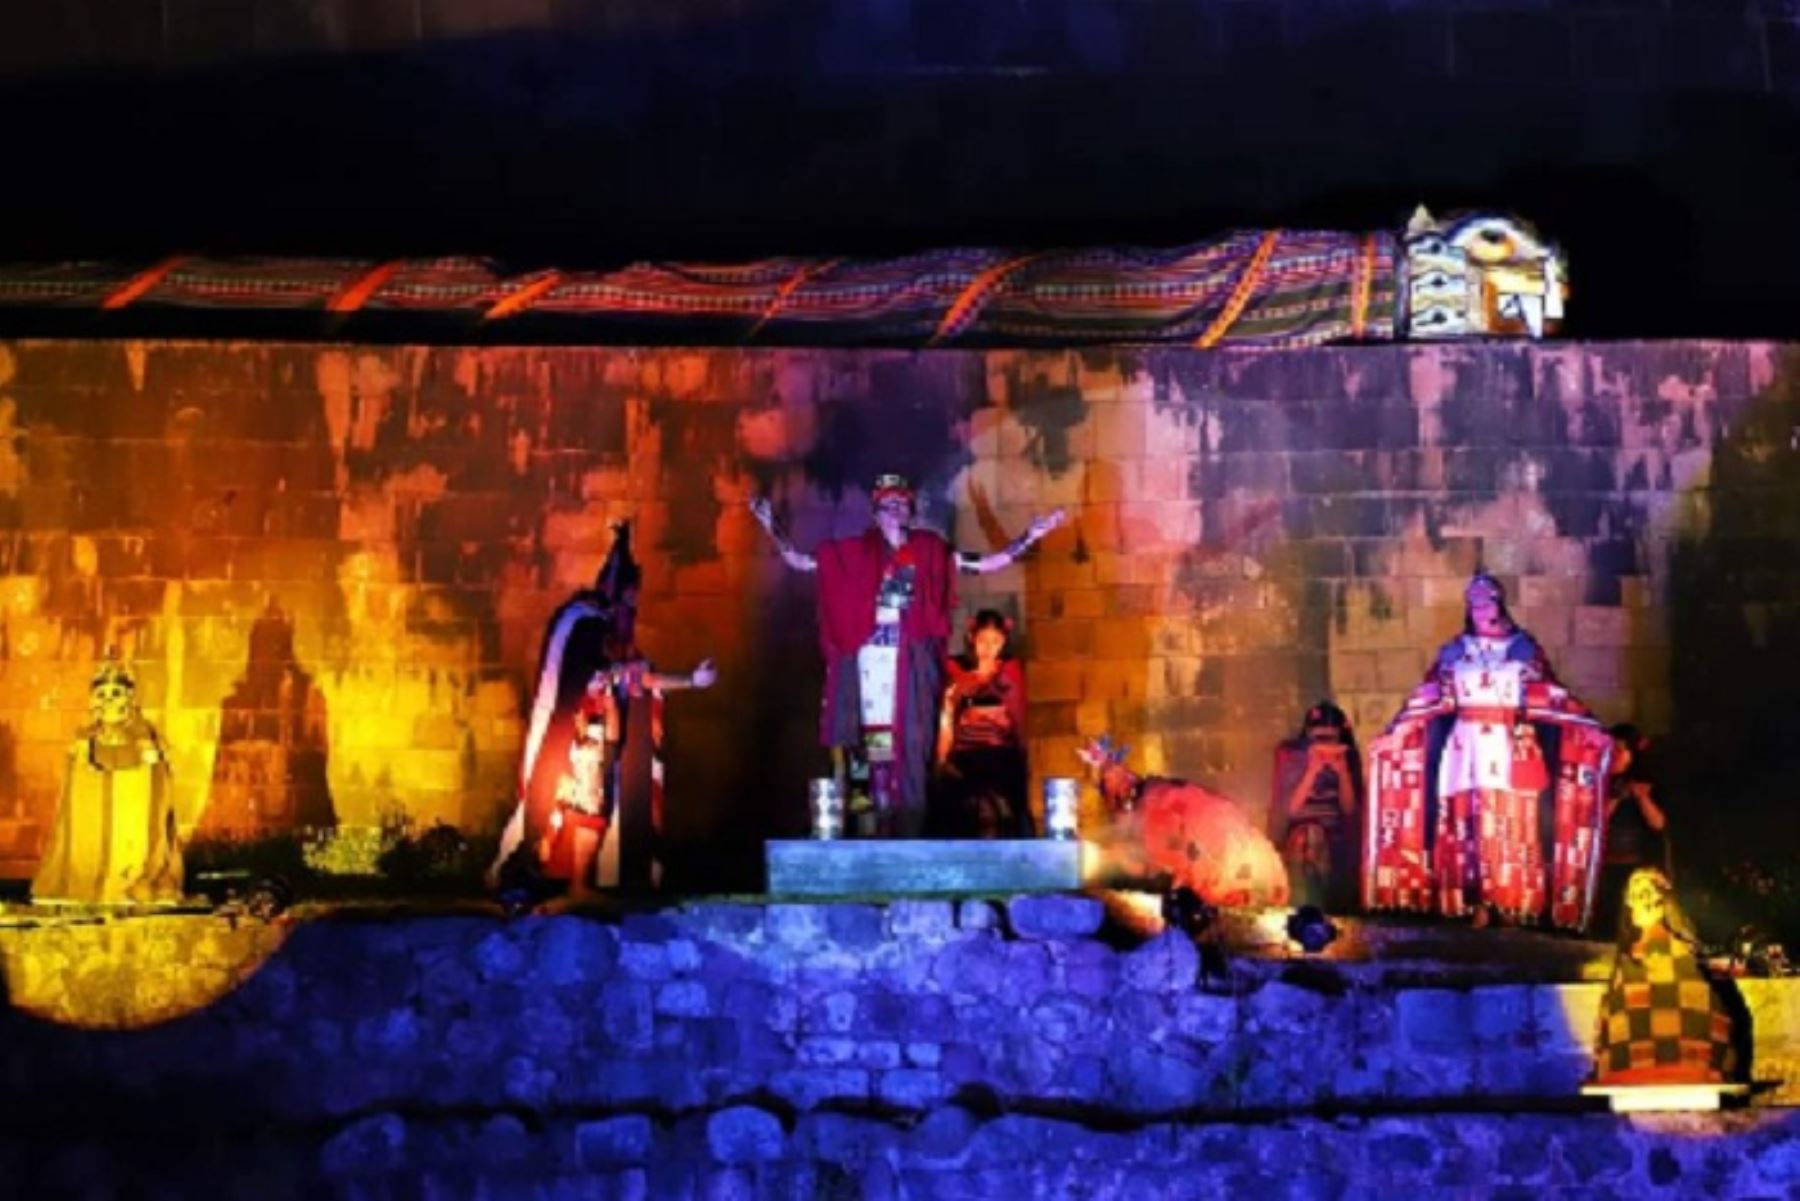 Más de 600 turistas, entre nacionales y extranjeros, disfrutarán de la ceremonia incaica del Situwa, que se realiza hoy desde las 18:00 horas en la explanada del templo incaico del Qoricancha, informó la Empresa Municipal de Festejos de Cusco. Foto: ANDINA/difusión.